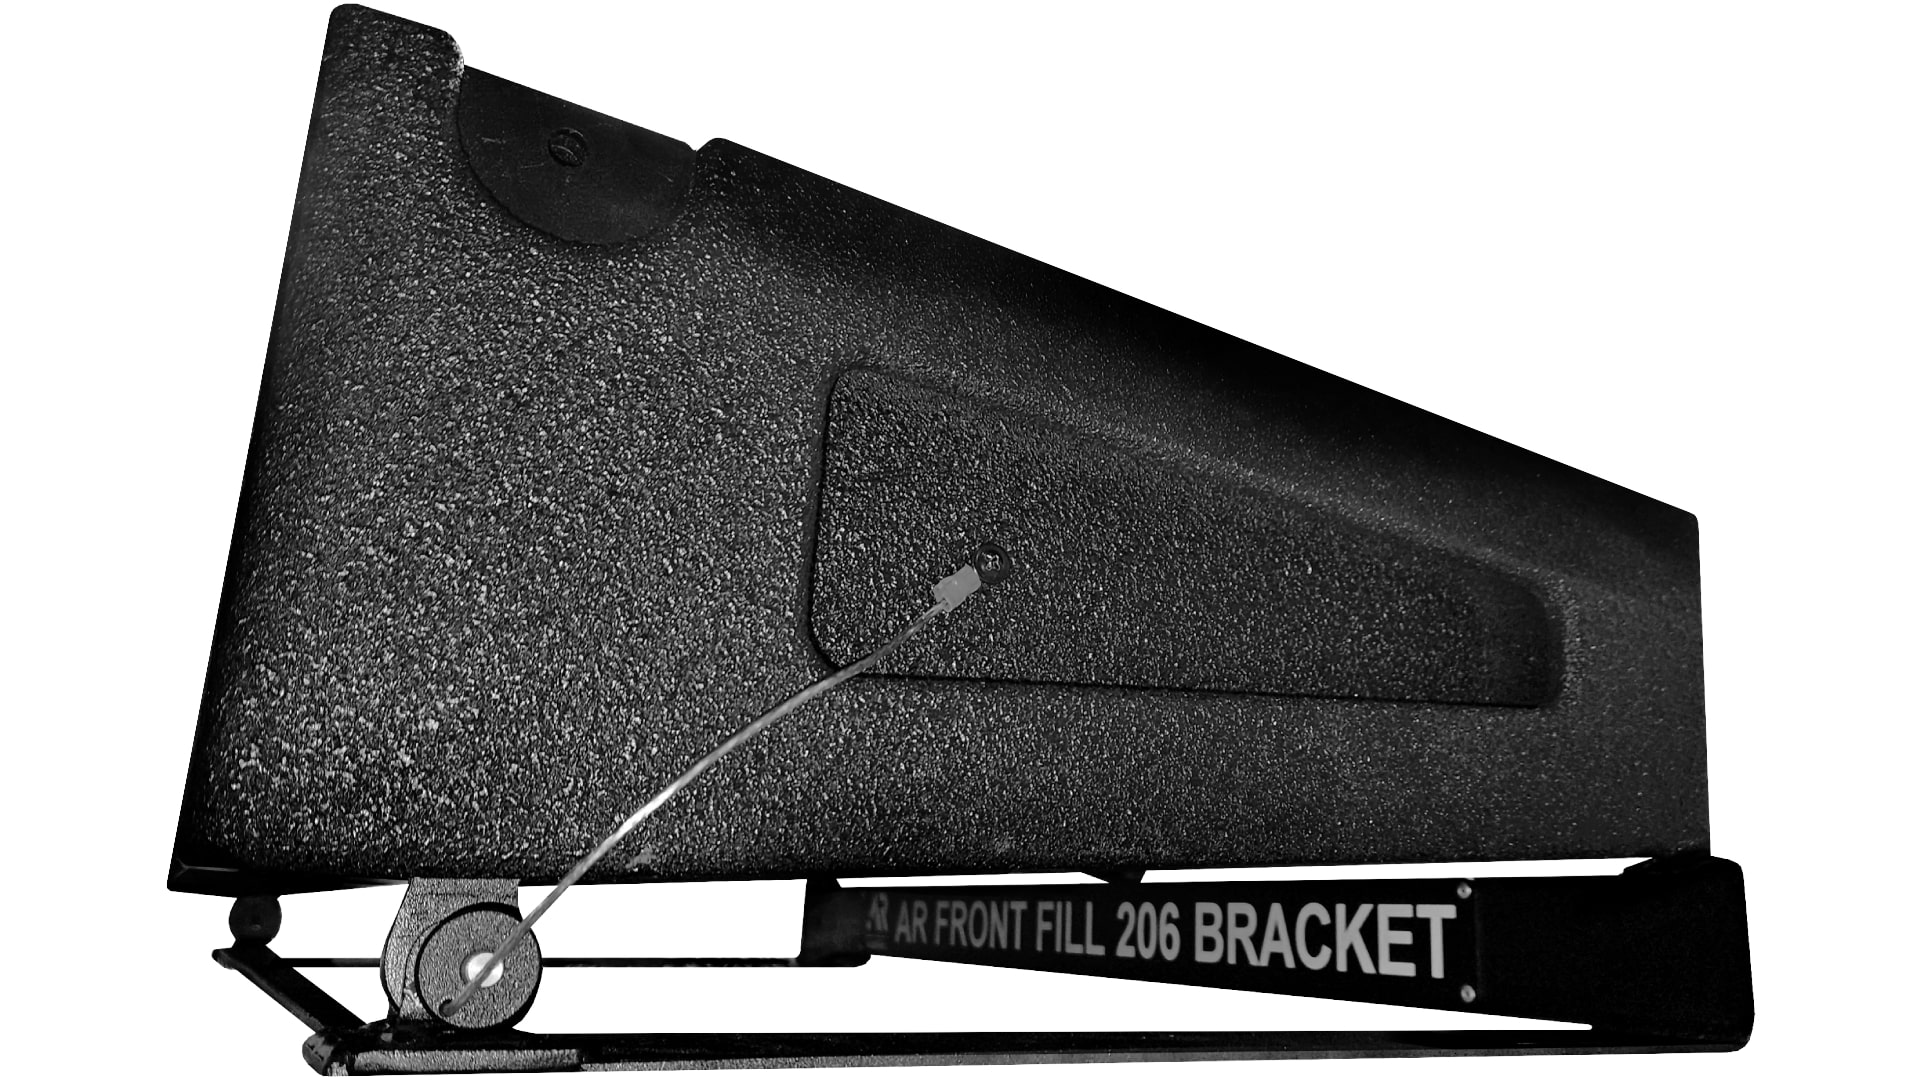 Стойки и держатели для акустики AUDIORUS AR FRONT FILL 206 BRACKET стойки и держатели для акустики eve audio sc bracket